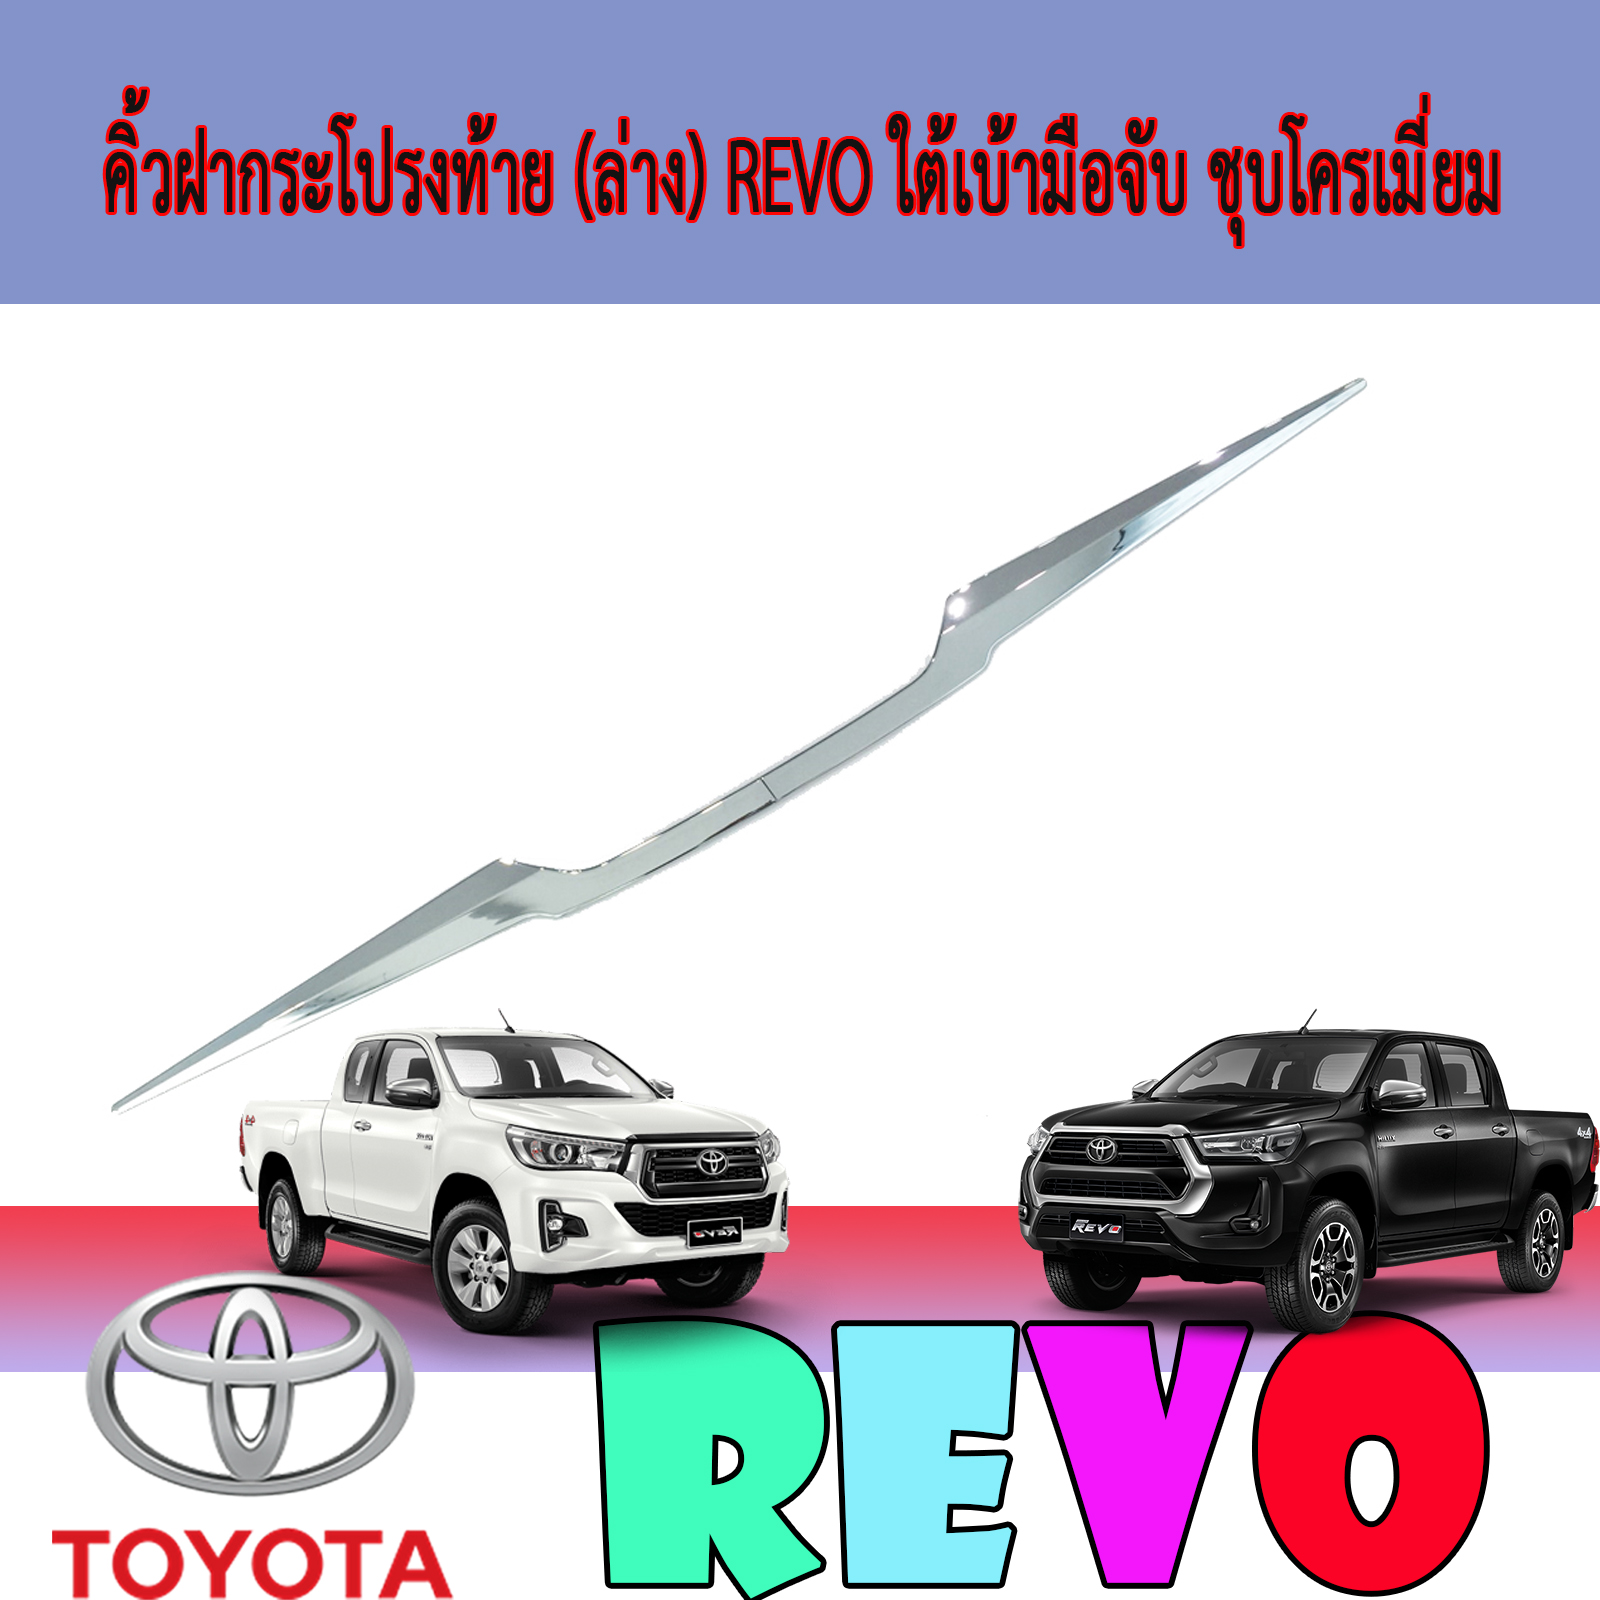 คิ้วฝากระโปรงท้าย (คิ้วฝากระโปรงท้าย (ล่าง)  โตโยต้า รีโว้ Toyota REVO ใต้เบ้ามือจับ ชุบโครเมี่ยมล่าง)  โตโยต้า รีโว้ Toyota REVO ใต้เบ้ามือจับ ชุบโครเมี่ยม